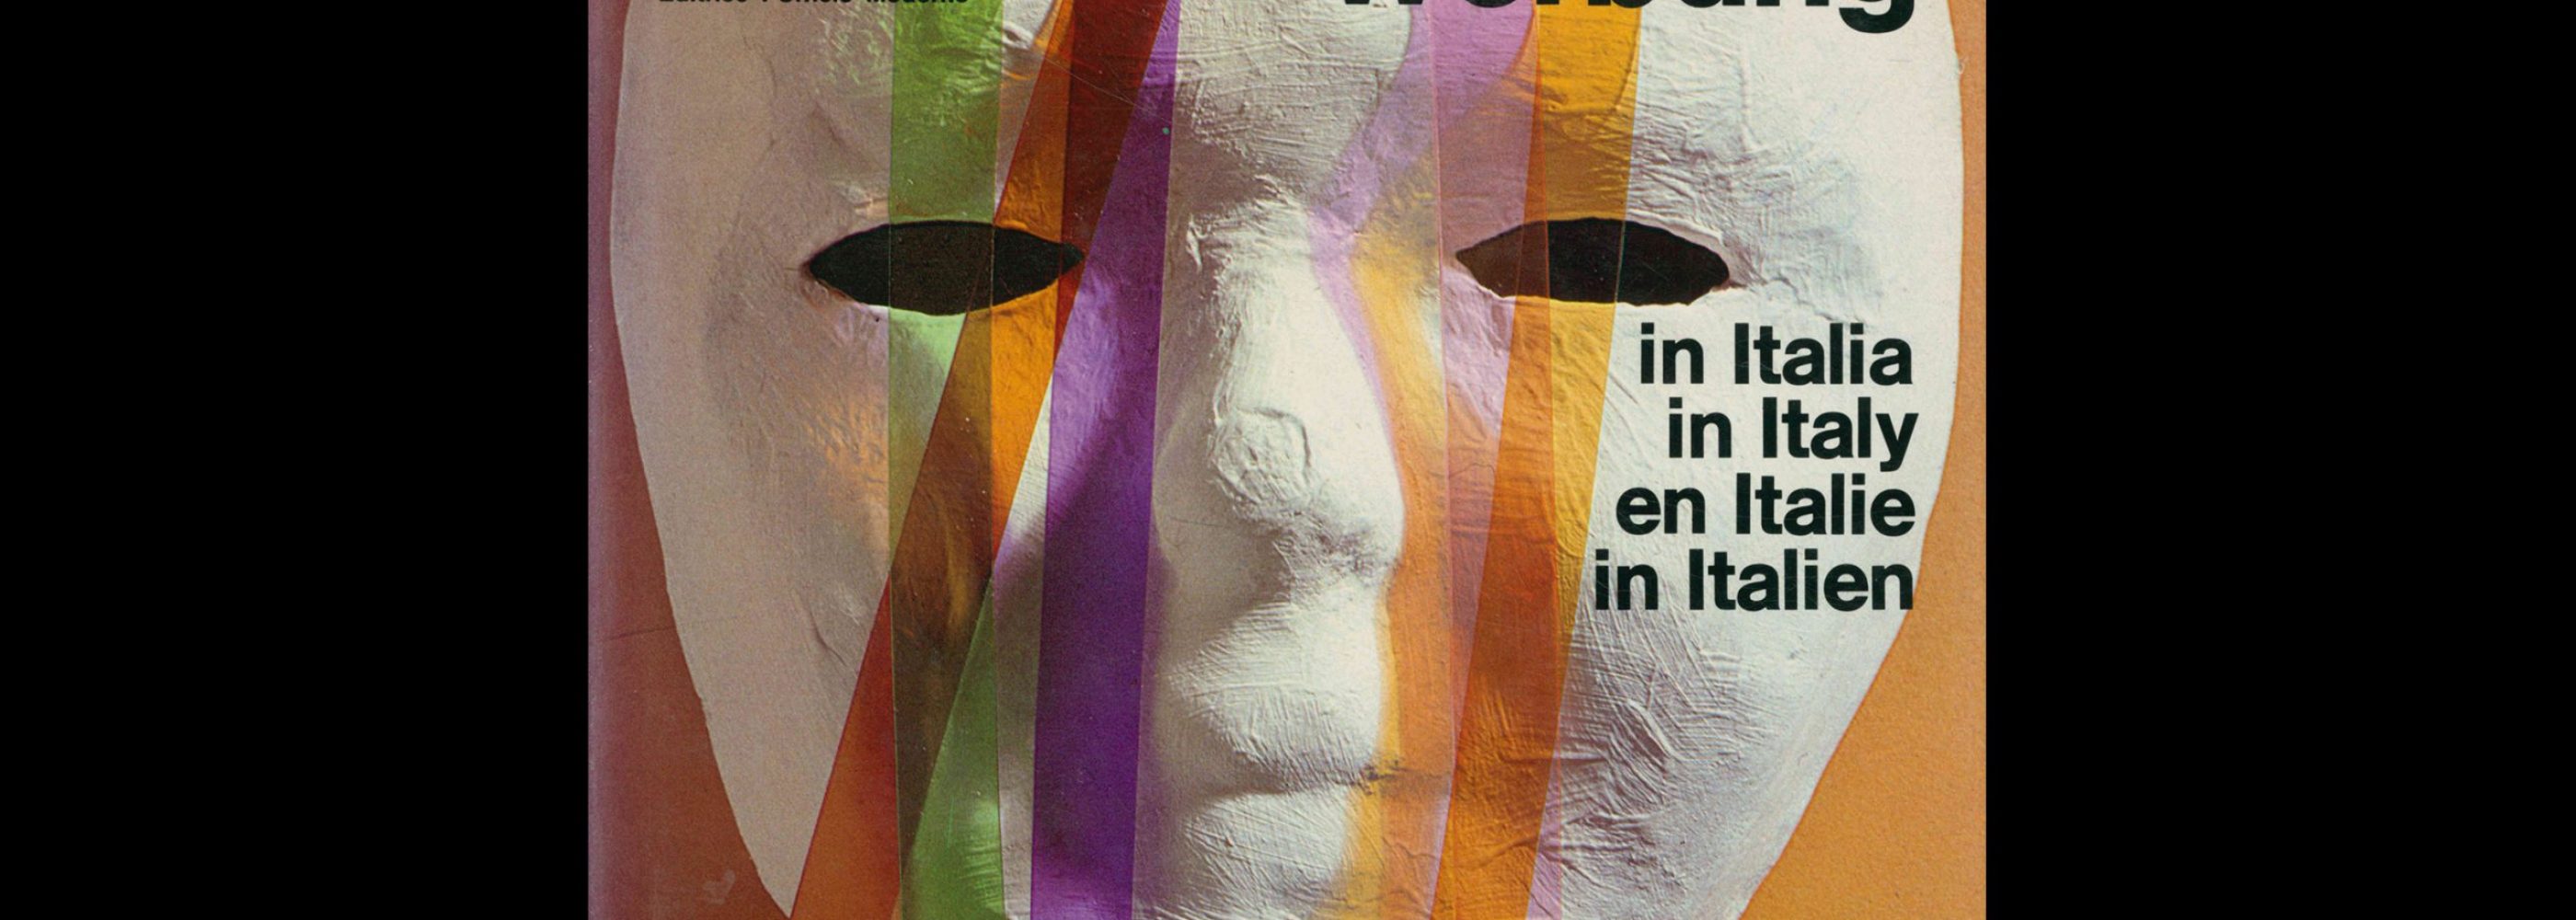 Pubblicità in Italia 1978-79. Design by Franco Grignani